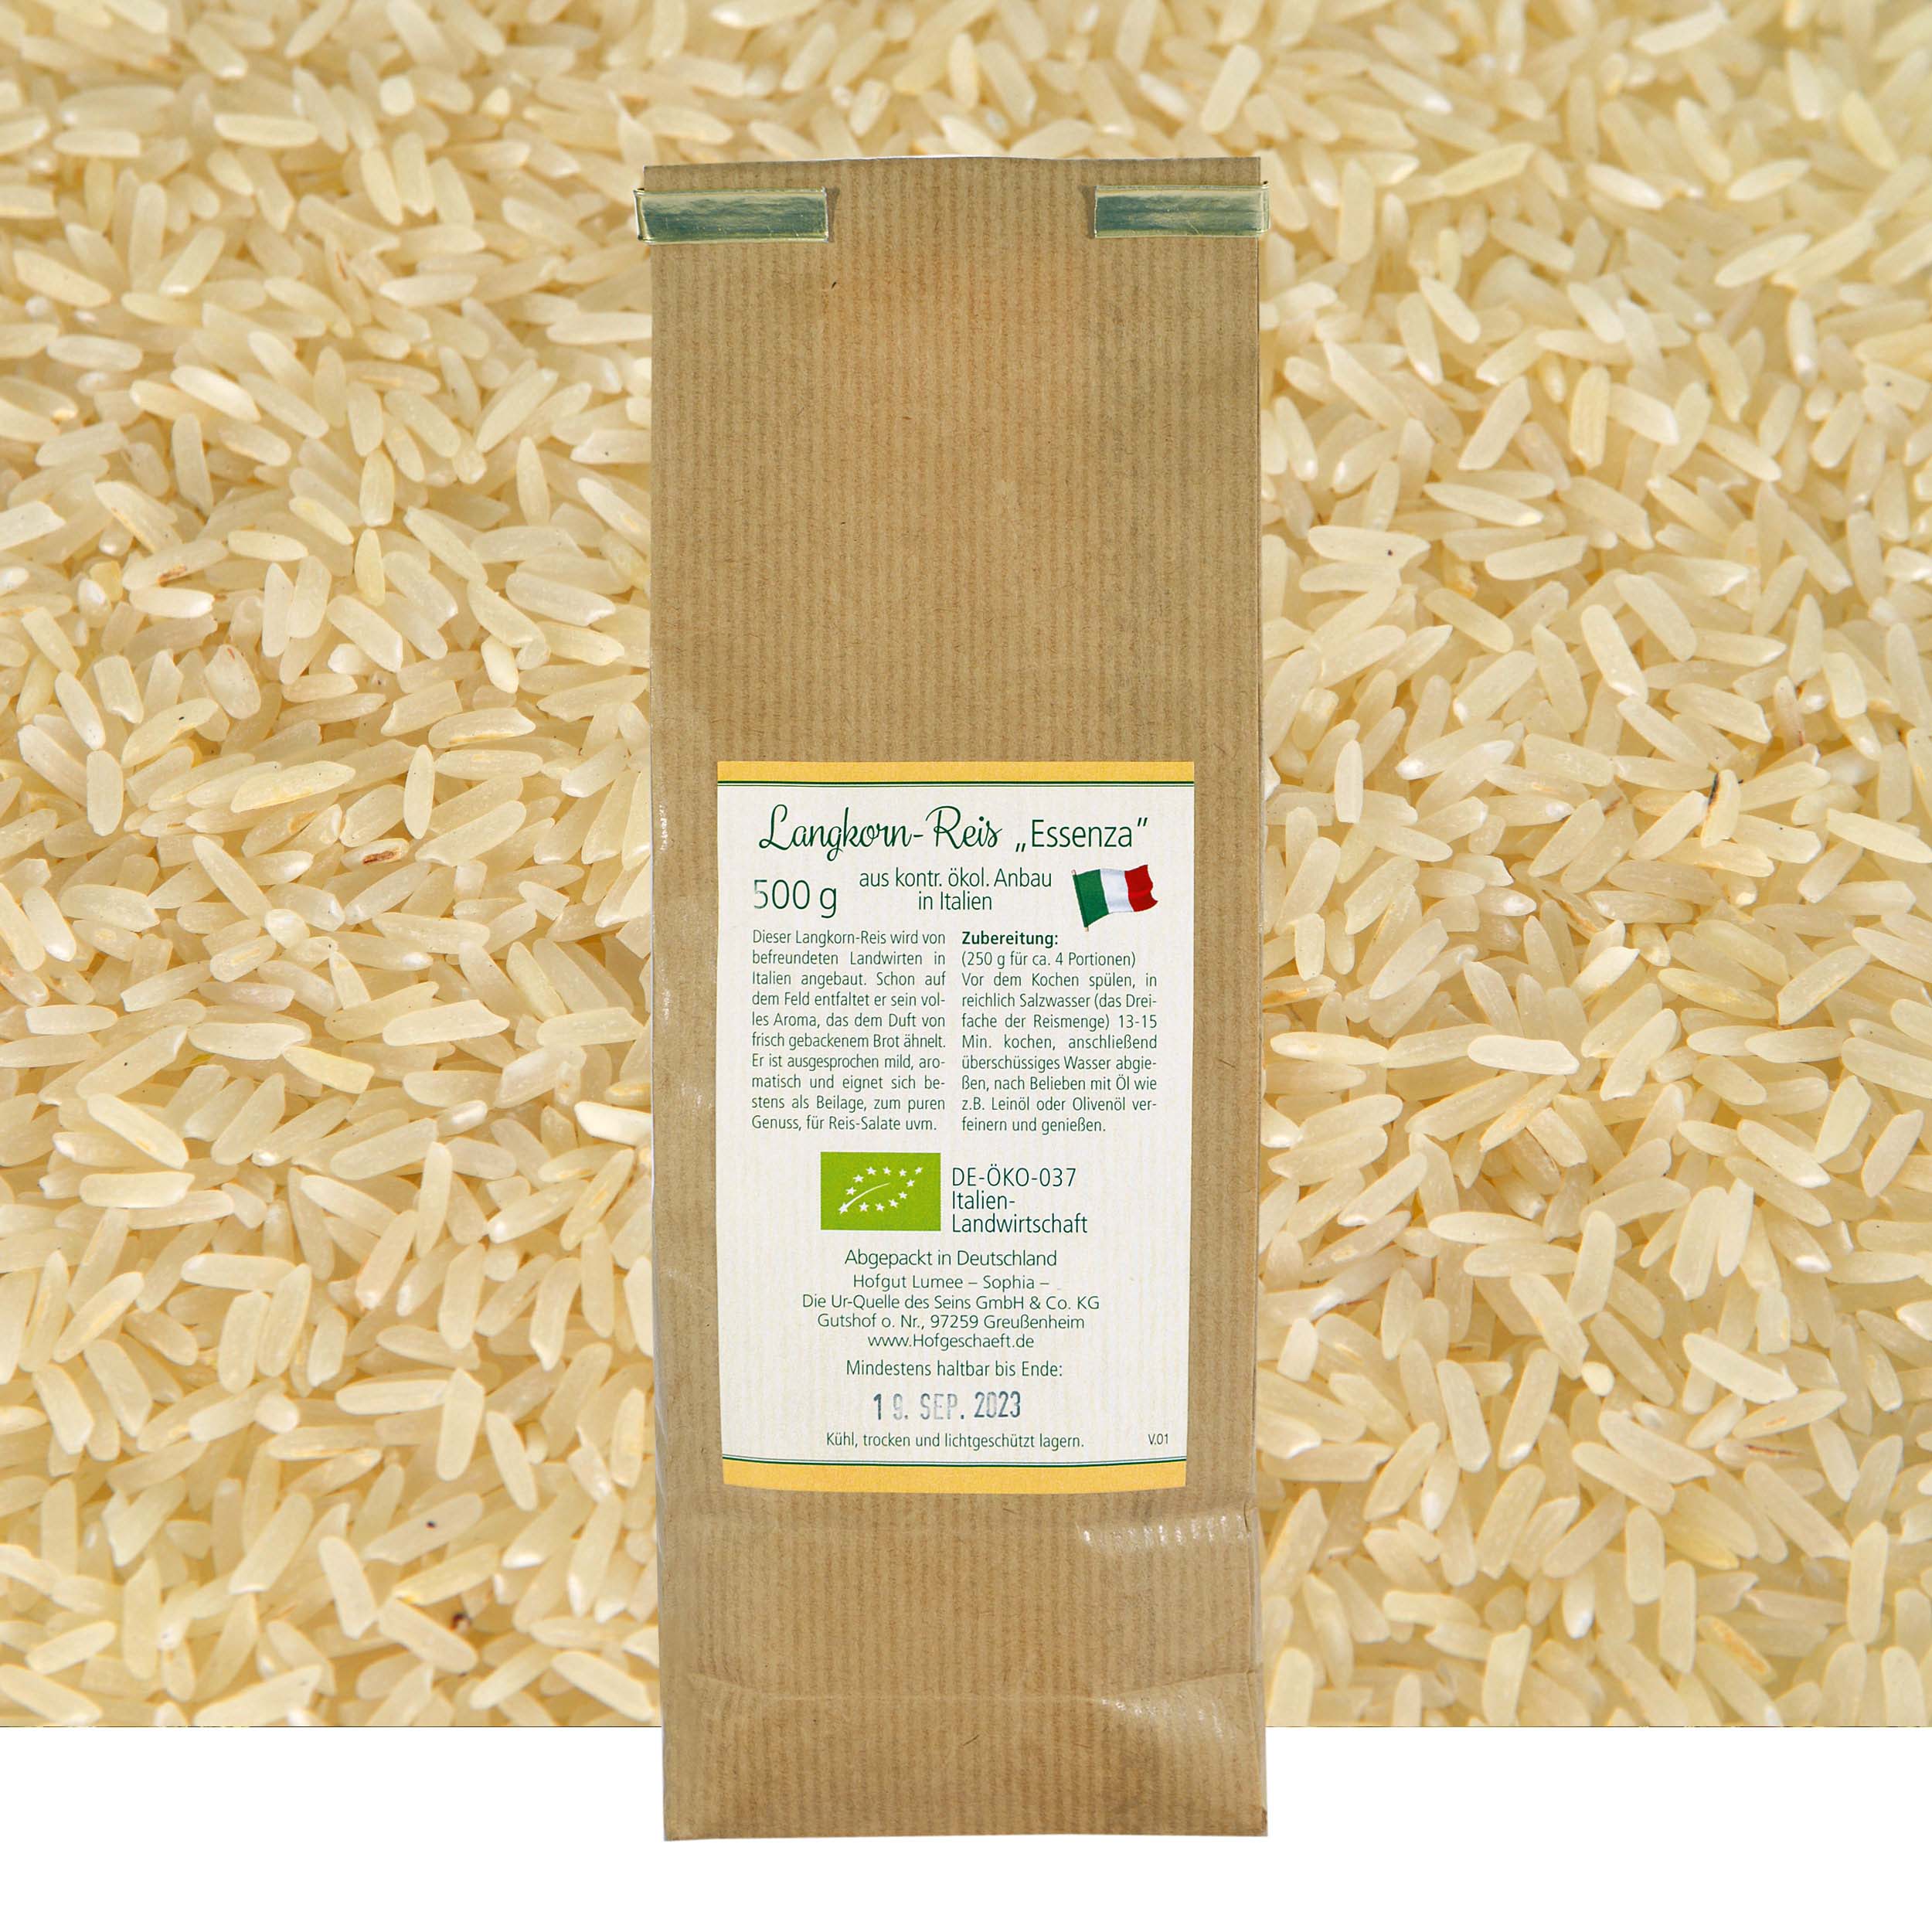 Rückseite der Verpackung Langkorn-Reis "Essenza"